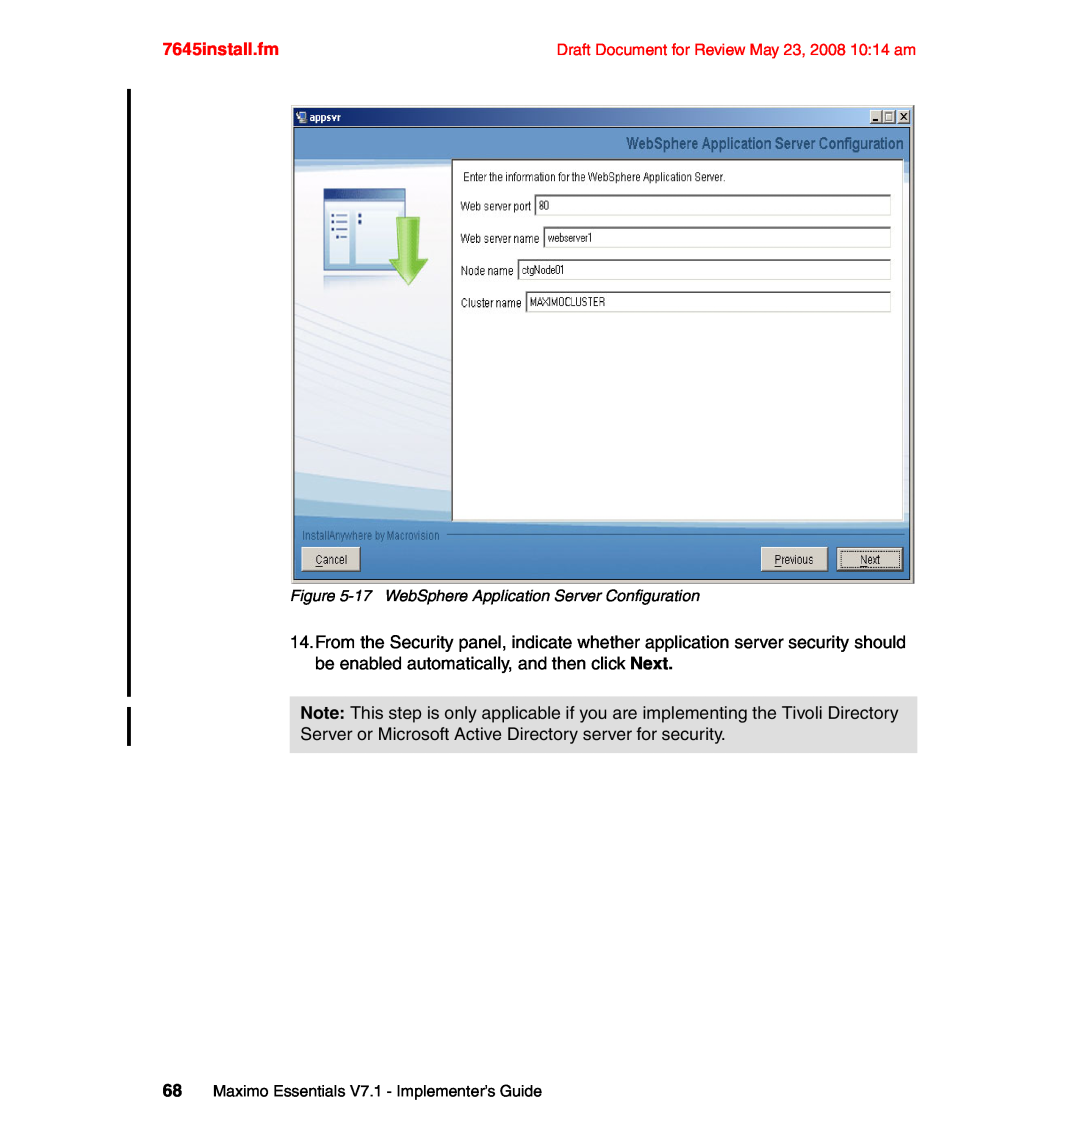 IBM SG24-7645-00 manual 7645install.fm, 68Maximo Essentials V7.1 - Implementer’s Guide 